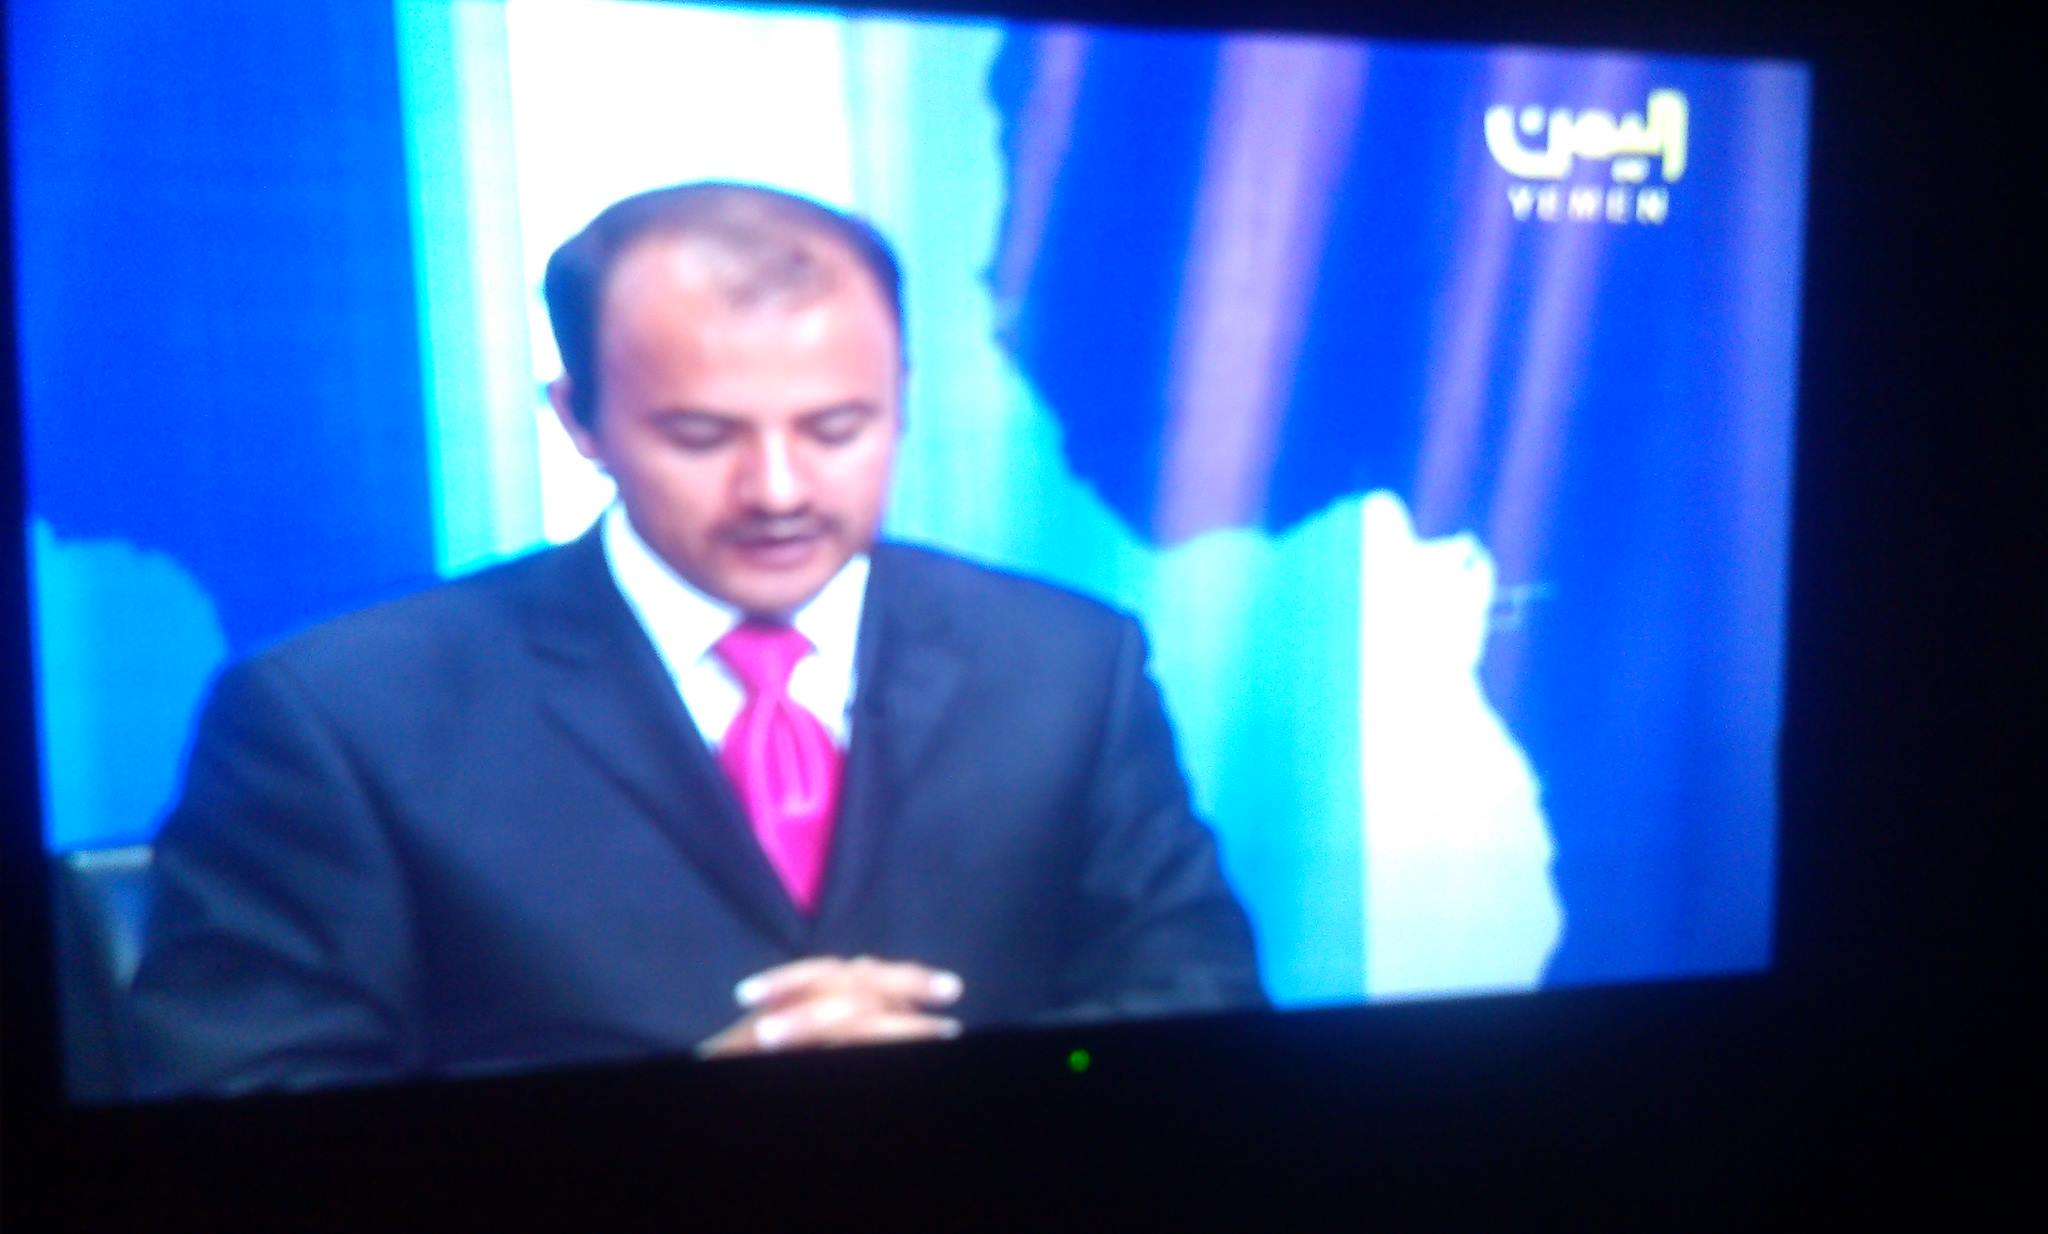  قناة اليمن الفضائية أثناء معاودته للبث من مقر آخر